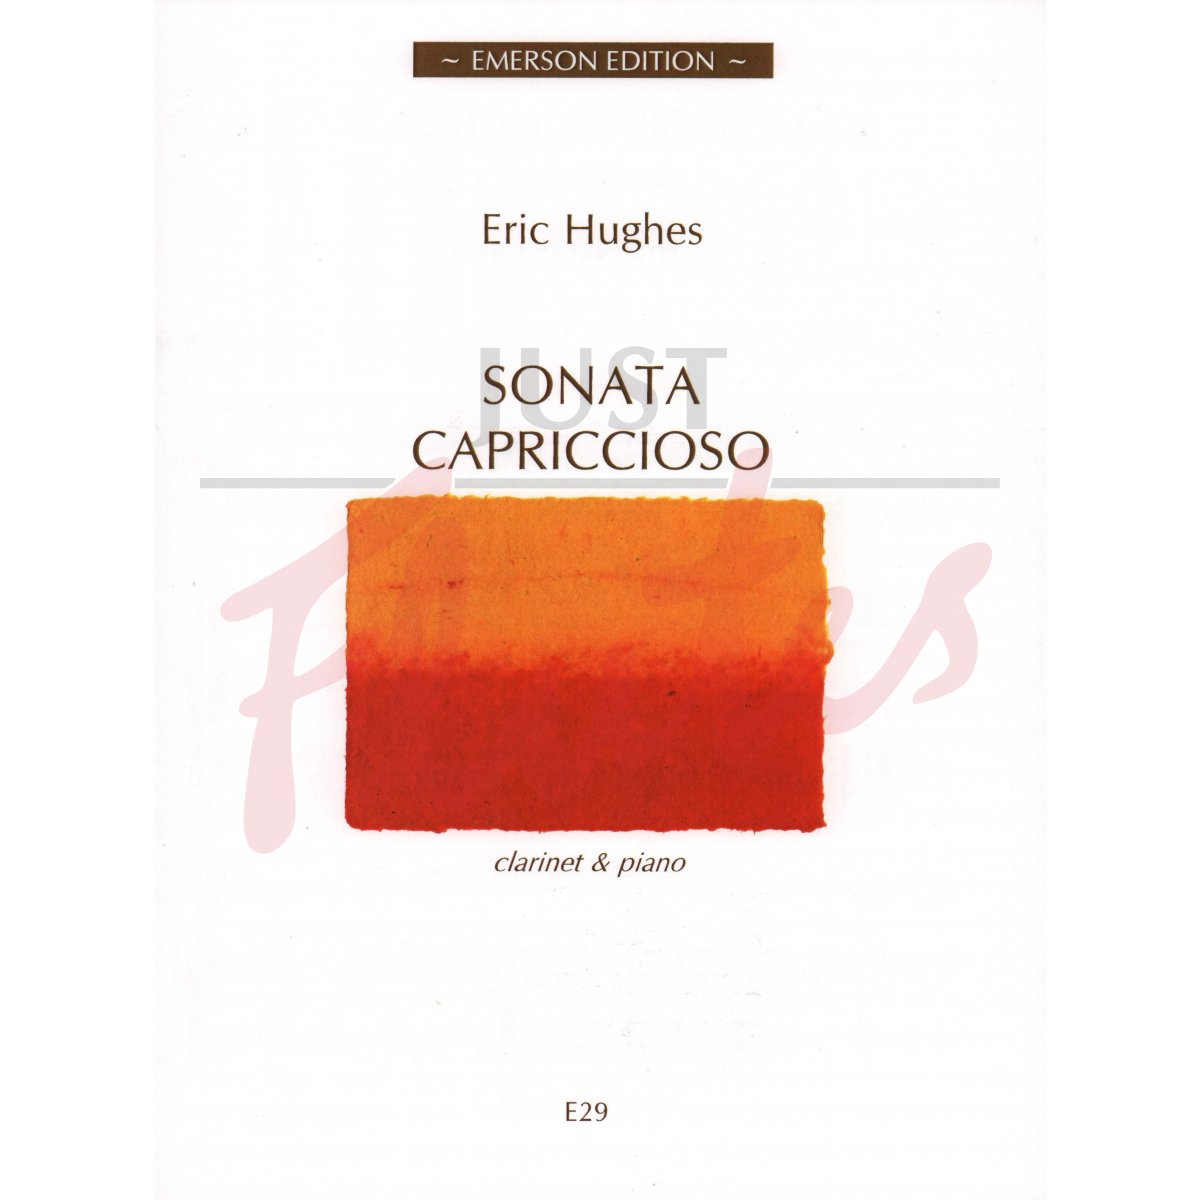 Sonata Capriccioso for Clarinet and Piano